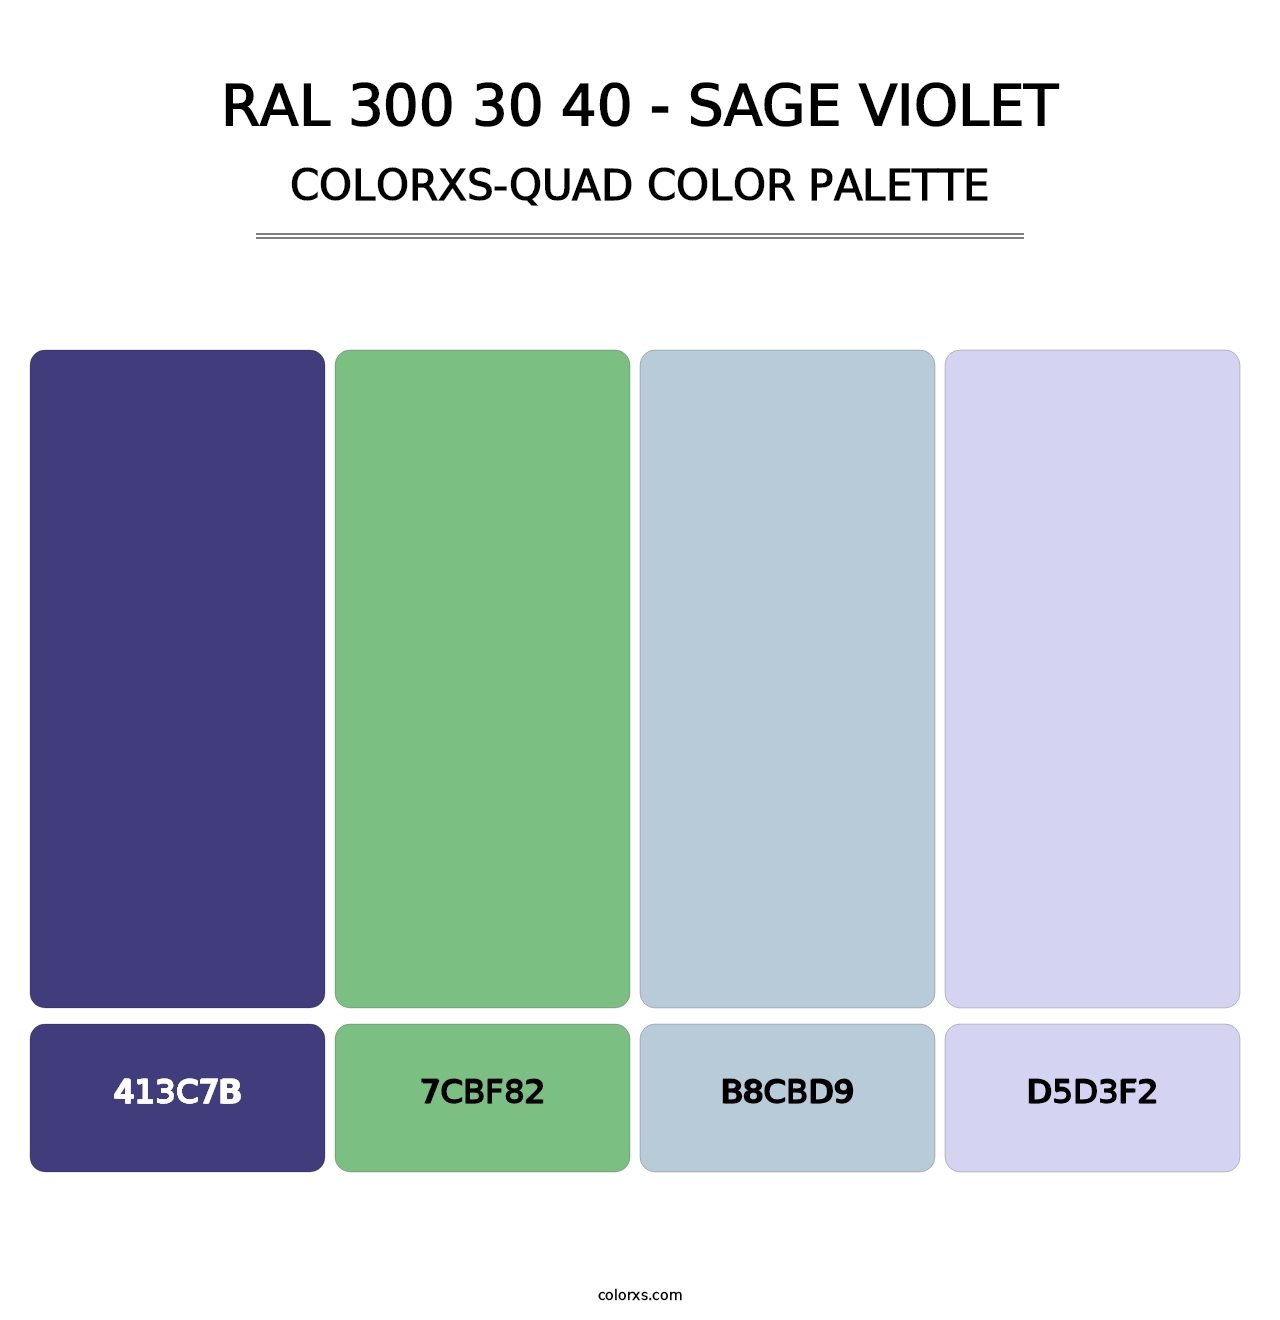 RAL 300 30 40 - Sage Violet - Colorxs Quad Palette